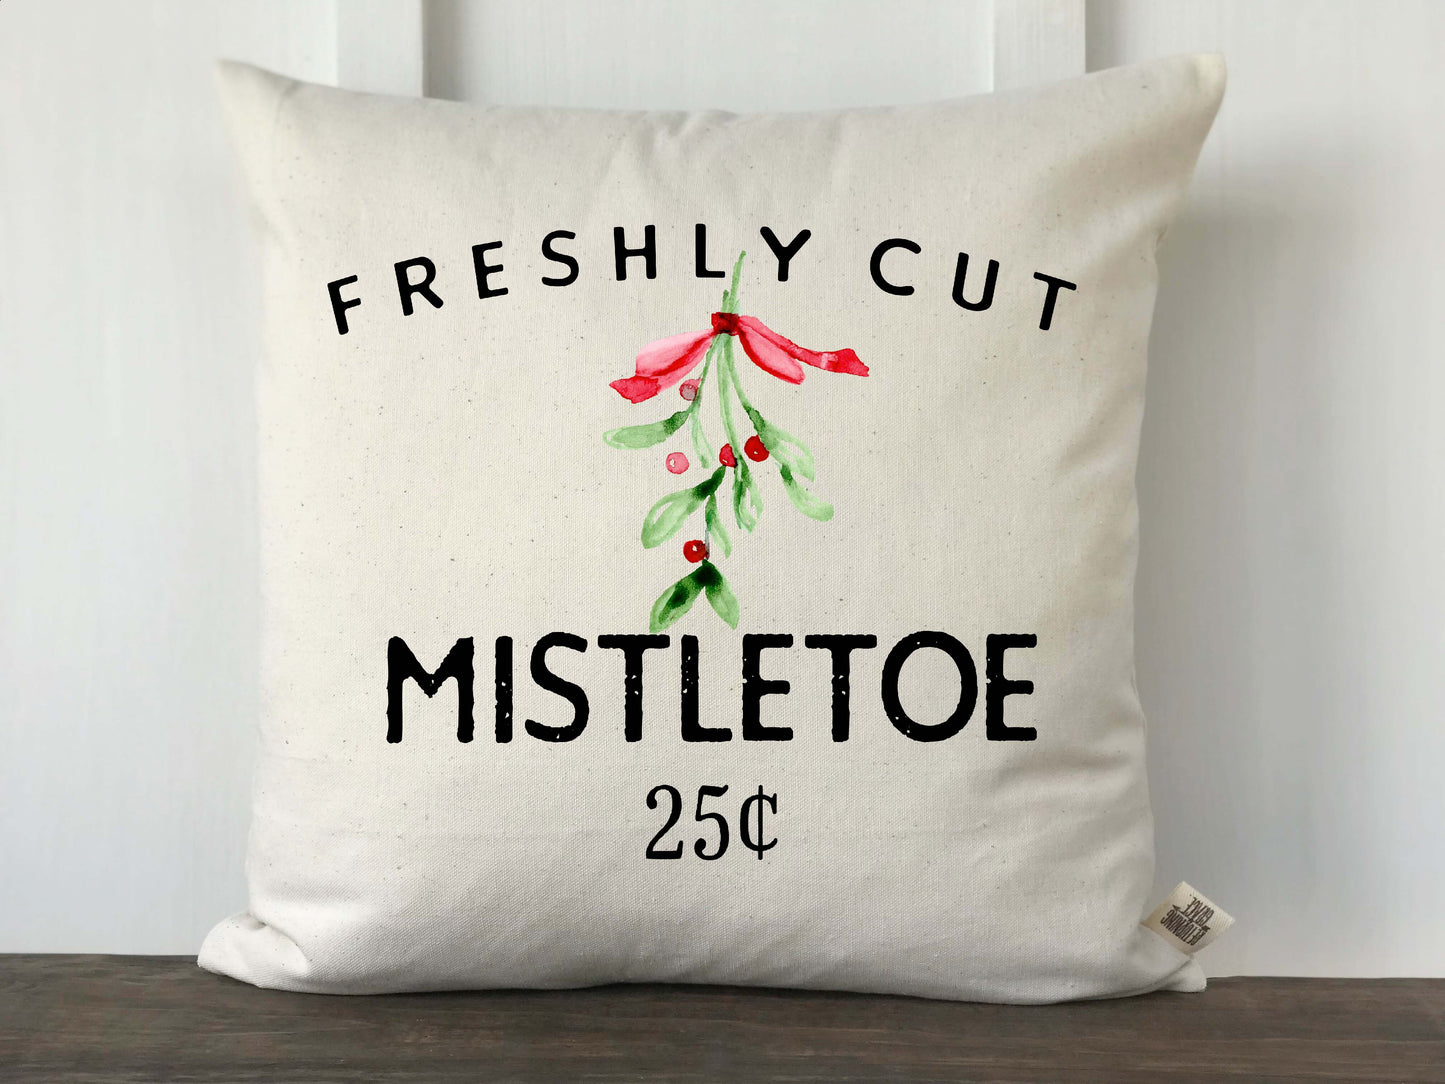 Freshly Cut Mistletoe Pillow Cover